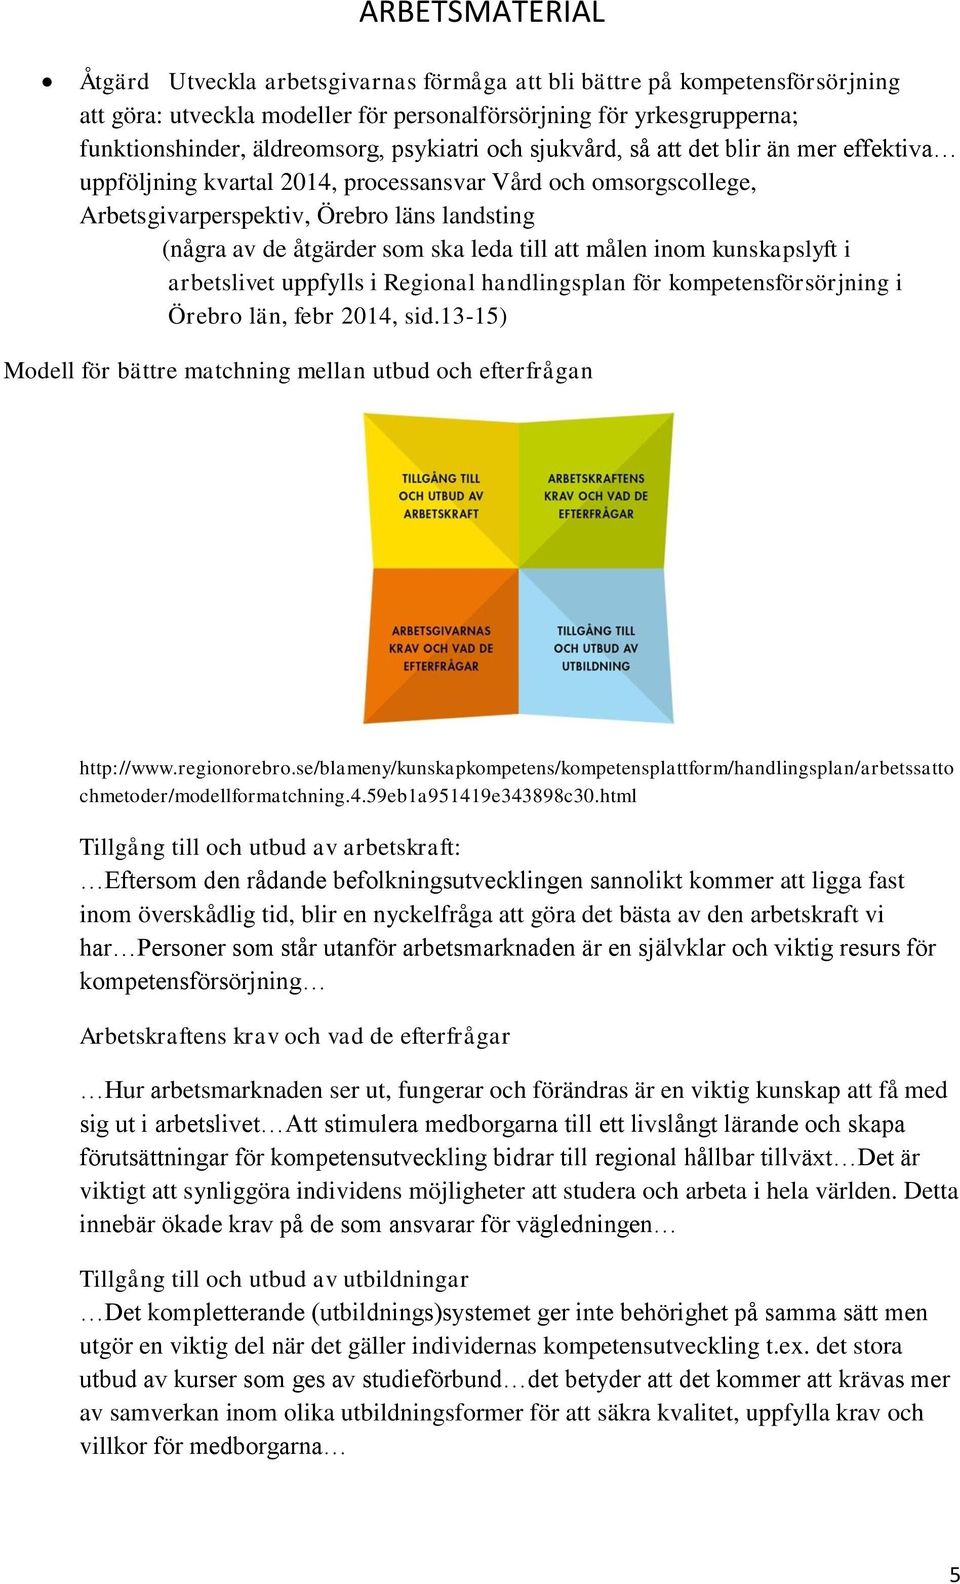 målen inom kunskapslyft i arbetslivet uppfylls i Regional handlingsplan för kompetensförsörjning i Örebro län, febr 2014, sid.